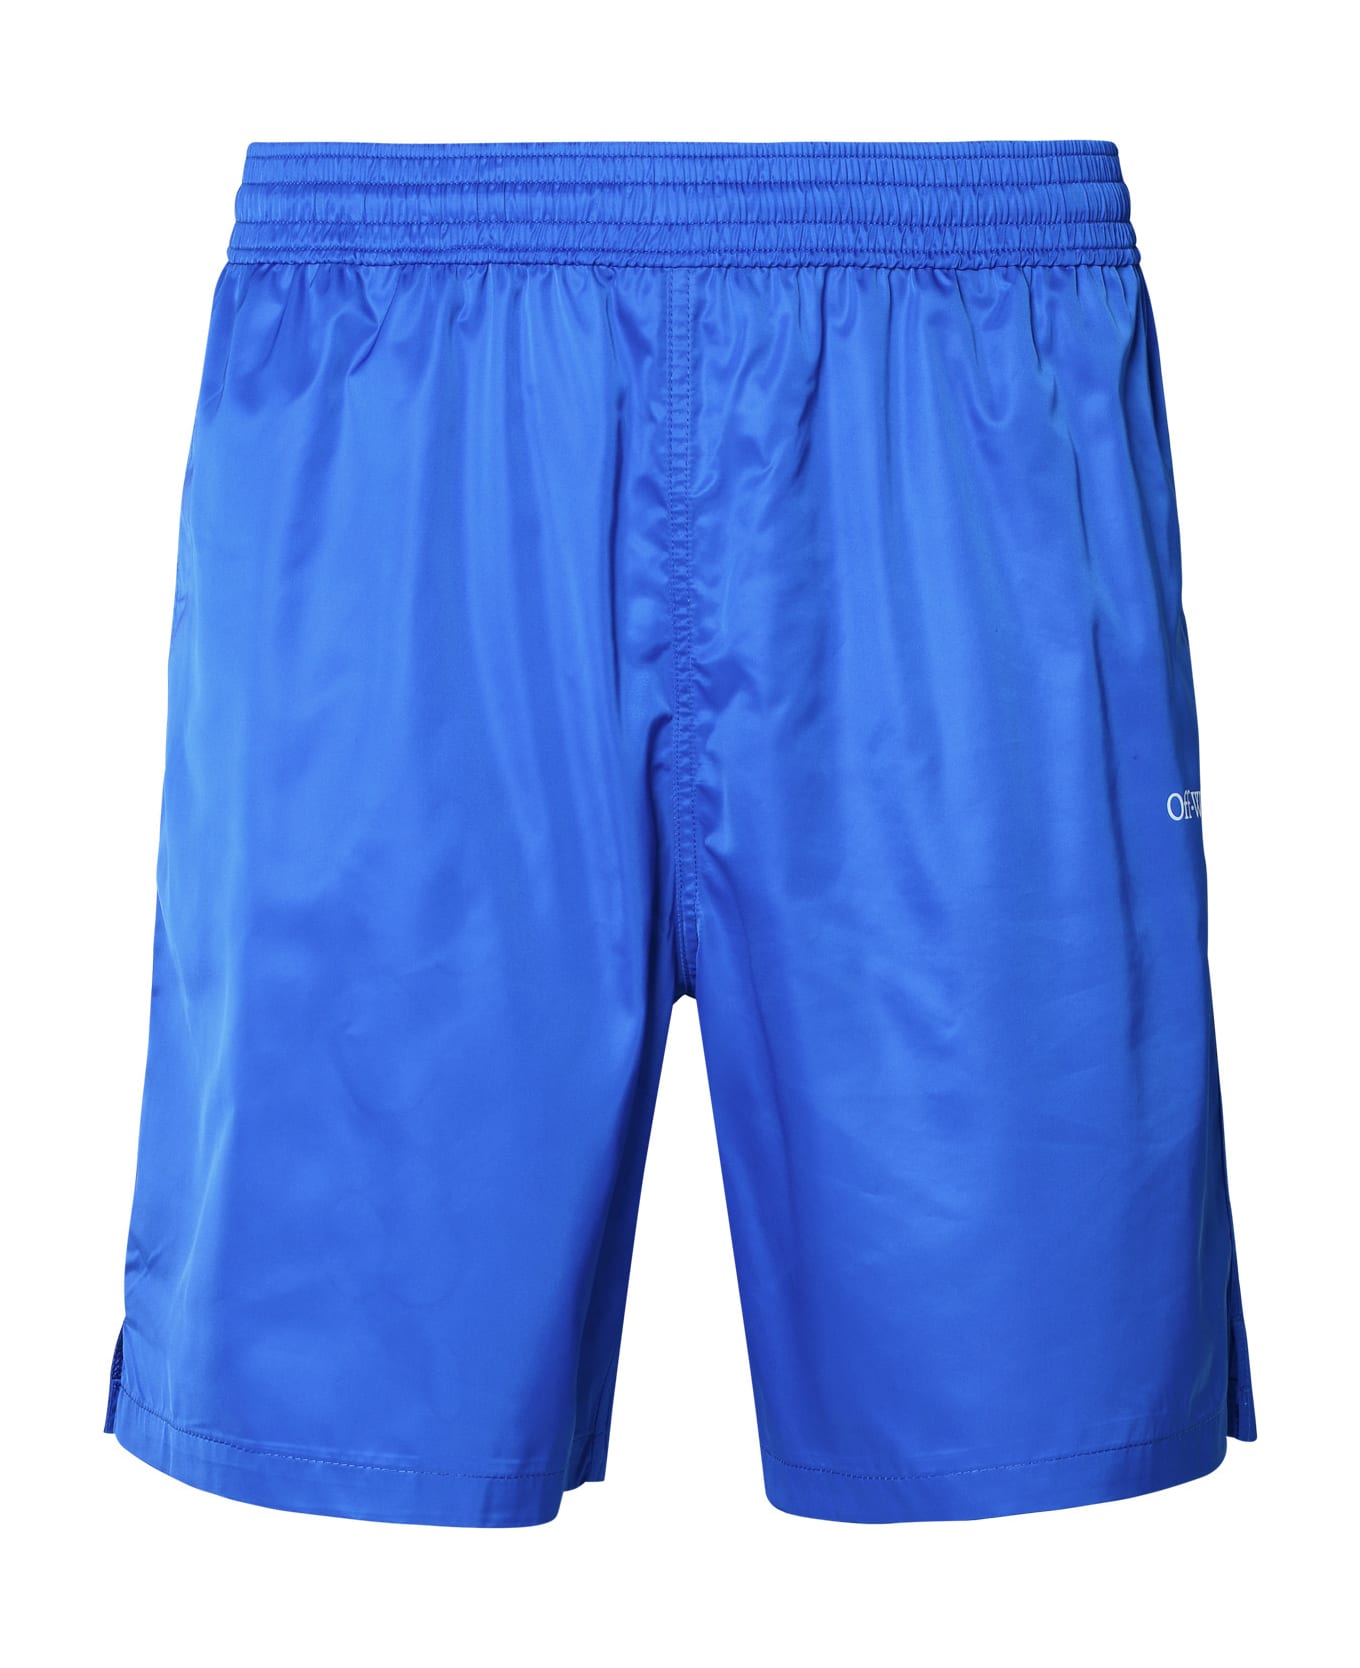 Off-White Swim Shorts - Blue ショートパンツ